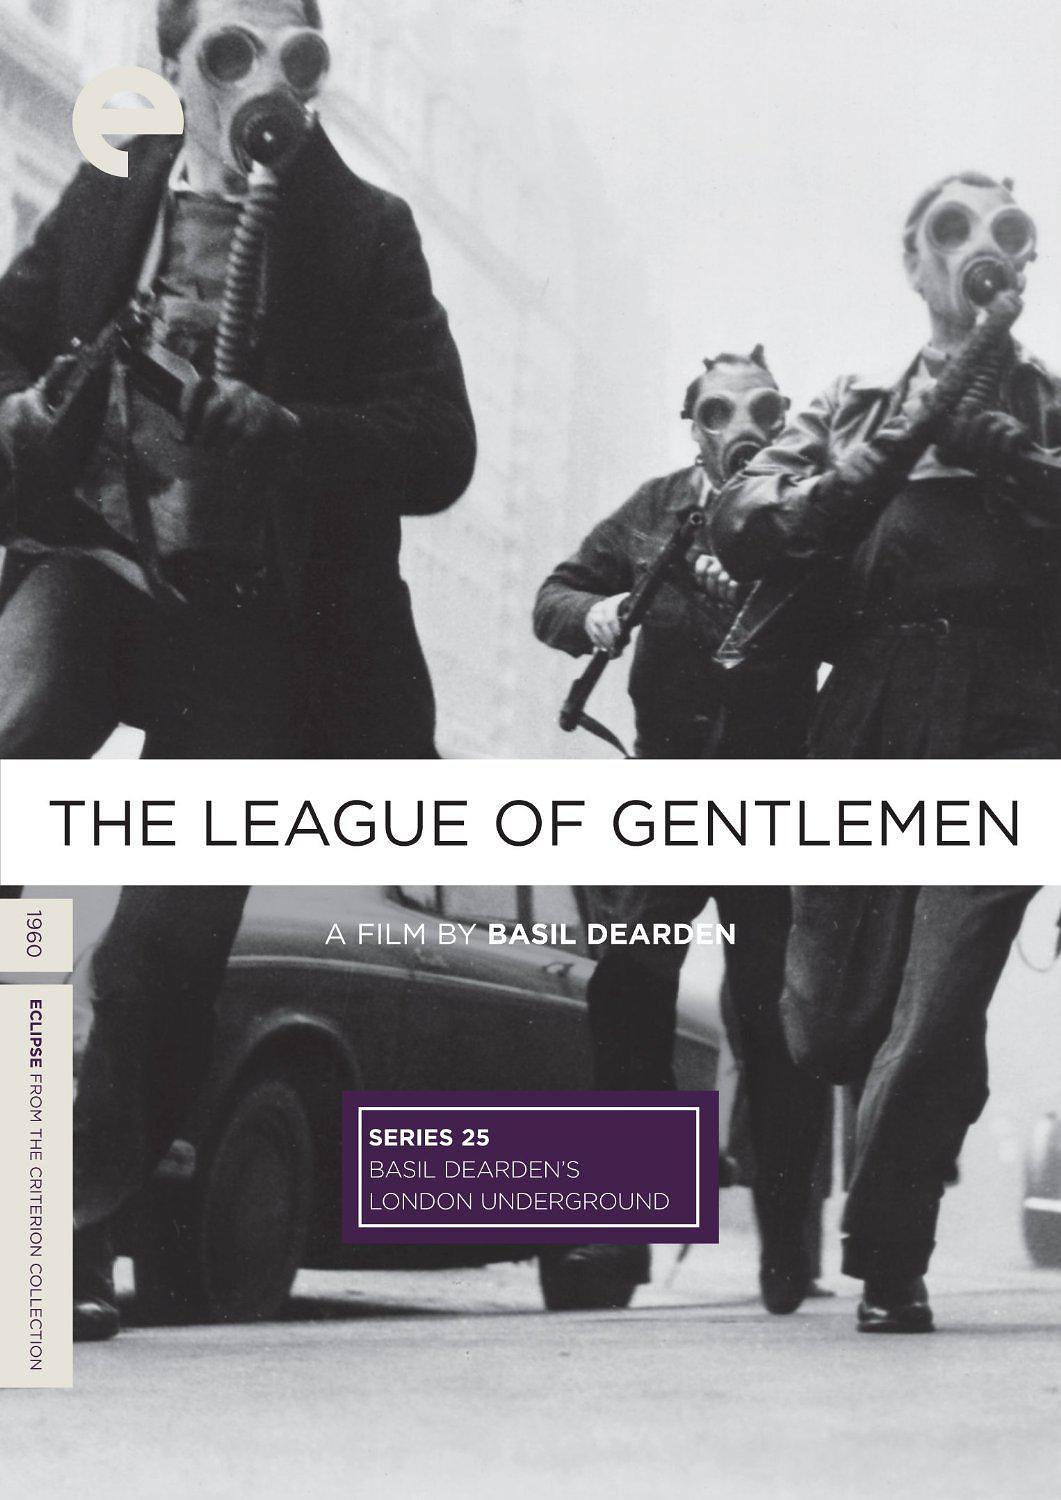 名流同盟/巴兹尔迪尔登的地下伦敦之名流同盟 The.League.of.Gentlemen.1960.720p.BluRay.x264-GHOULS 4.38GB-1.png